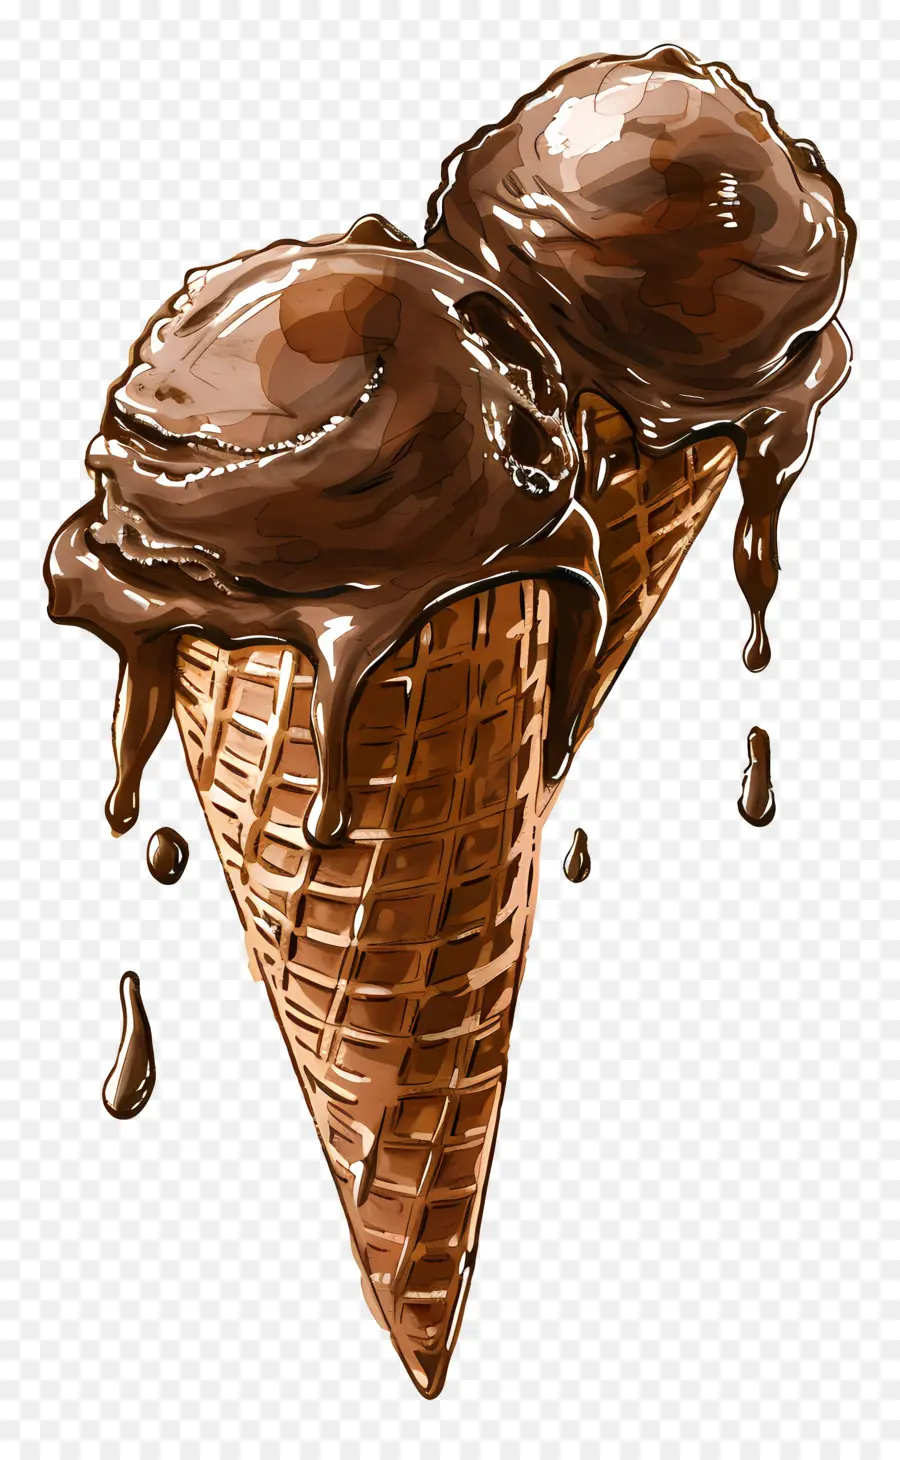 Coni Gelato - Due coni di gelato al cioccolato con salsa